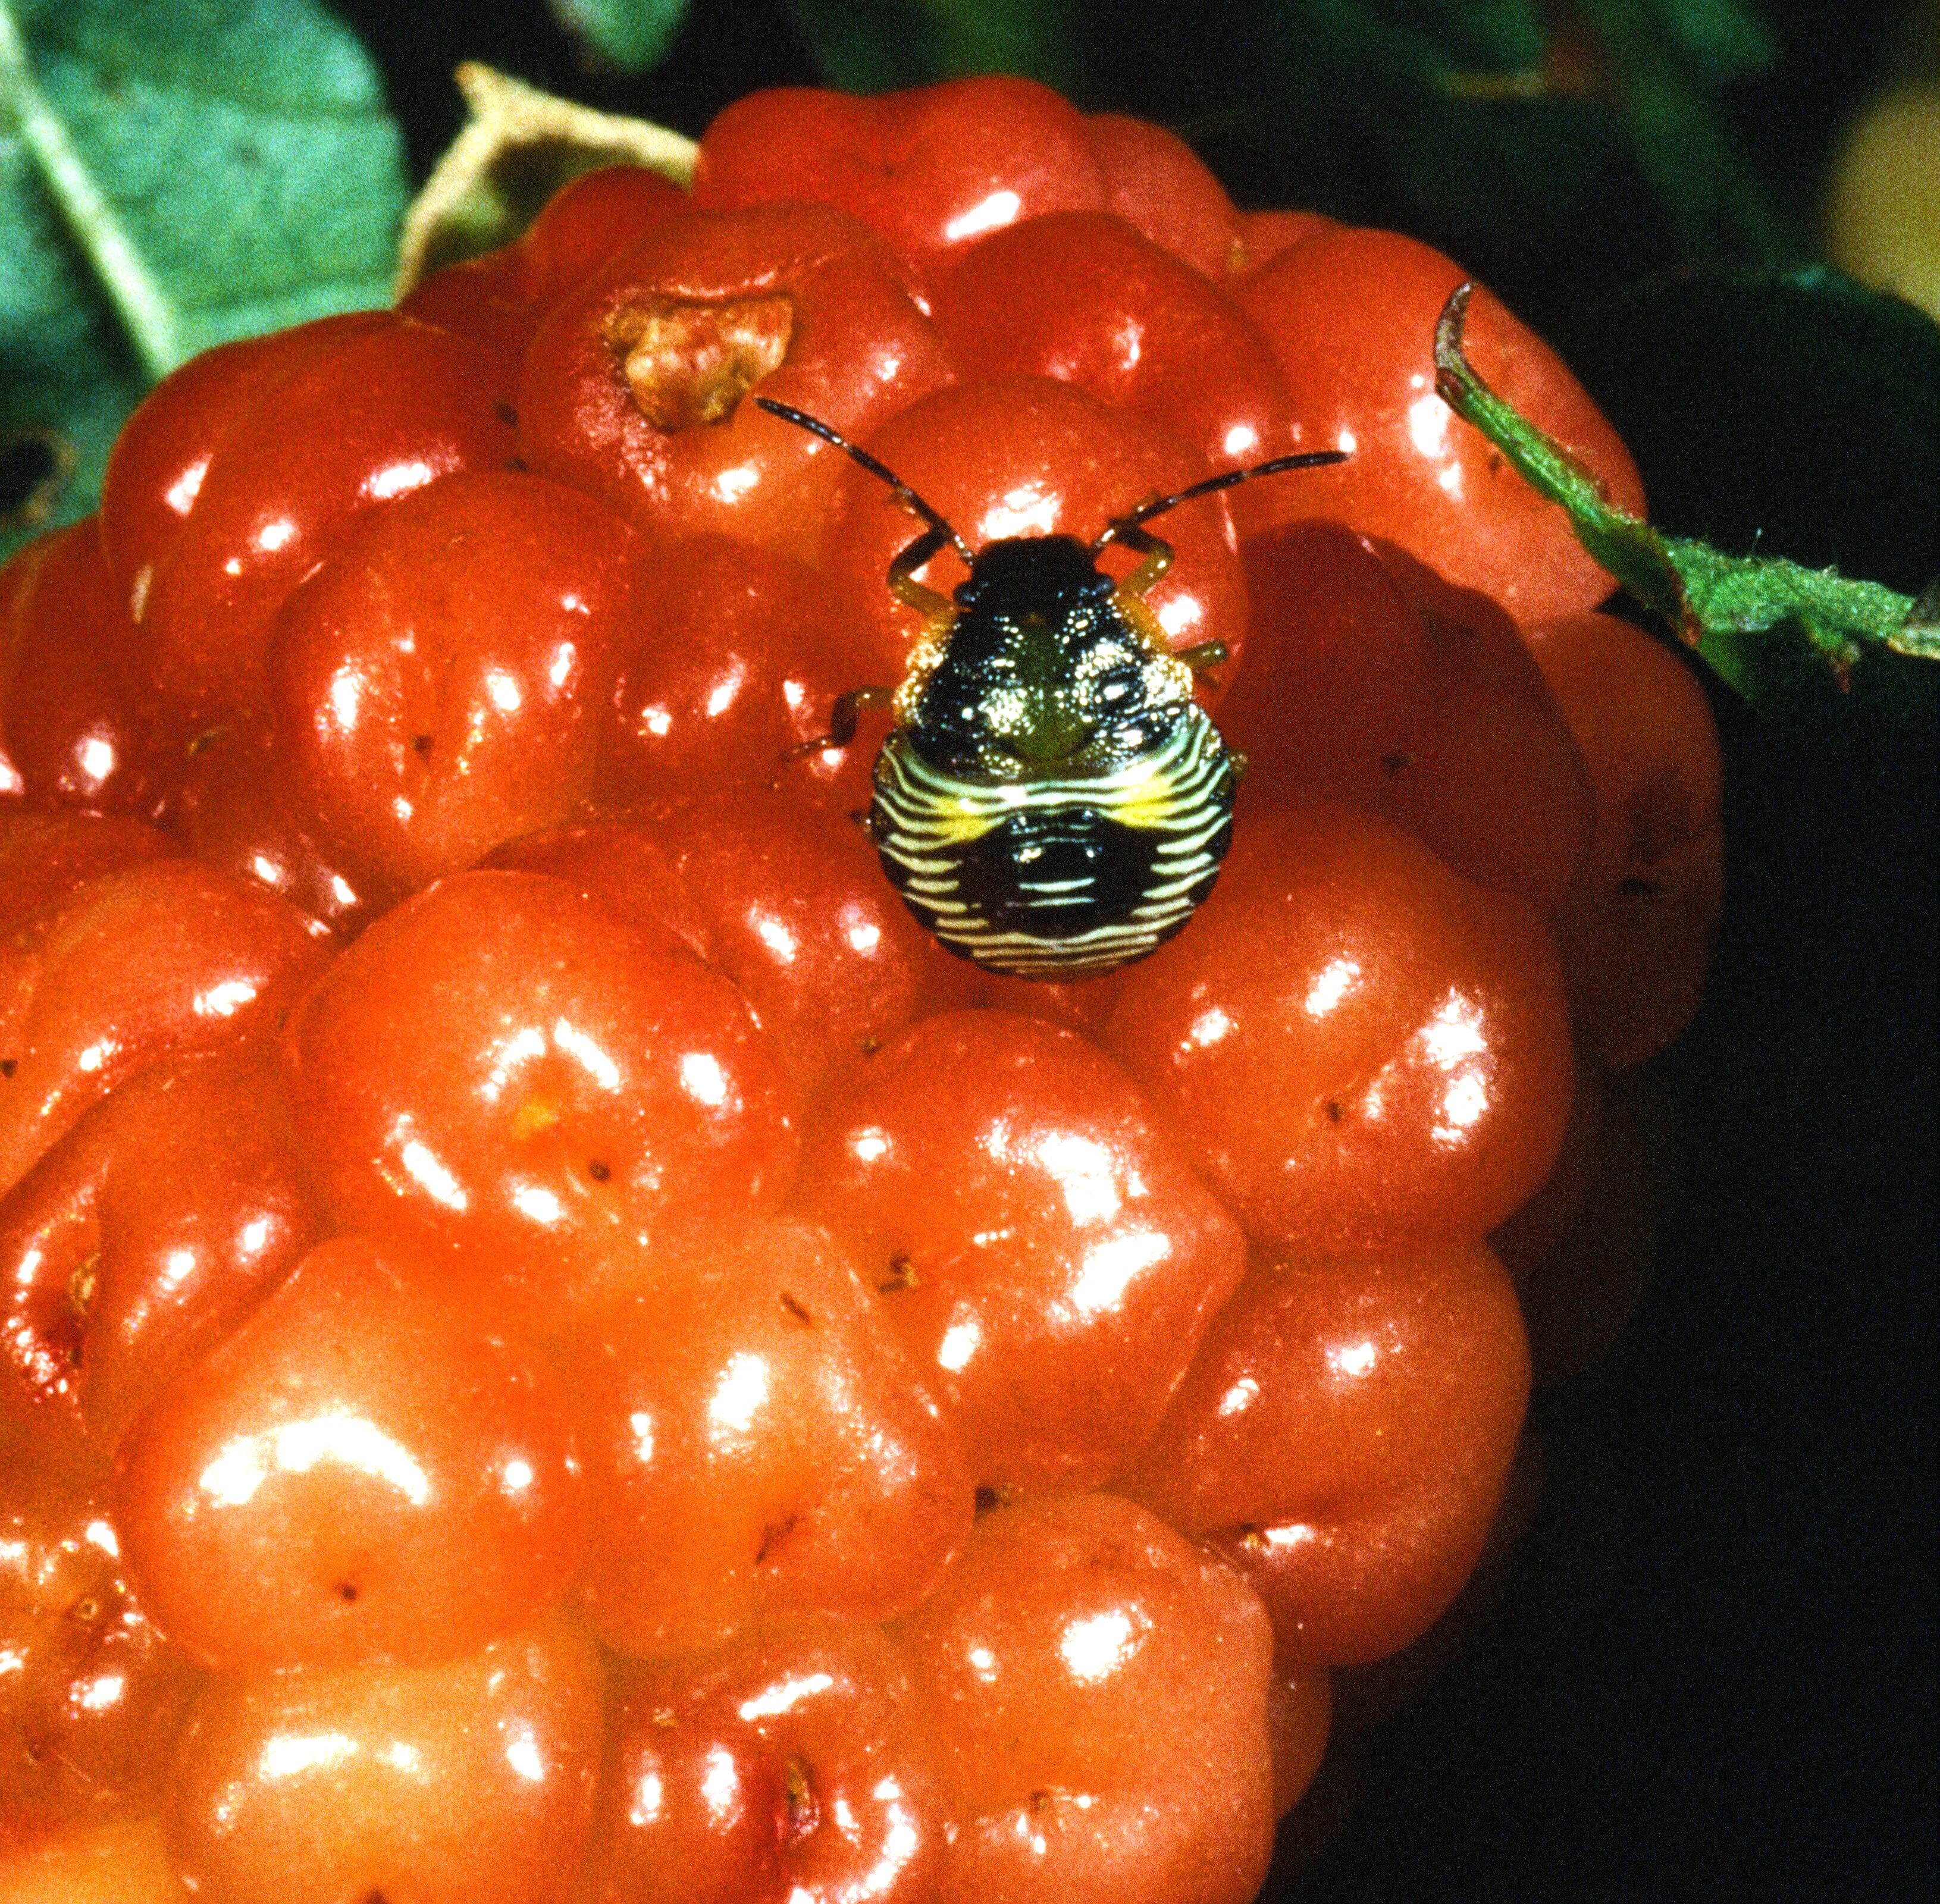 Brown stink bug on blackberry fruit. 